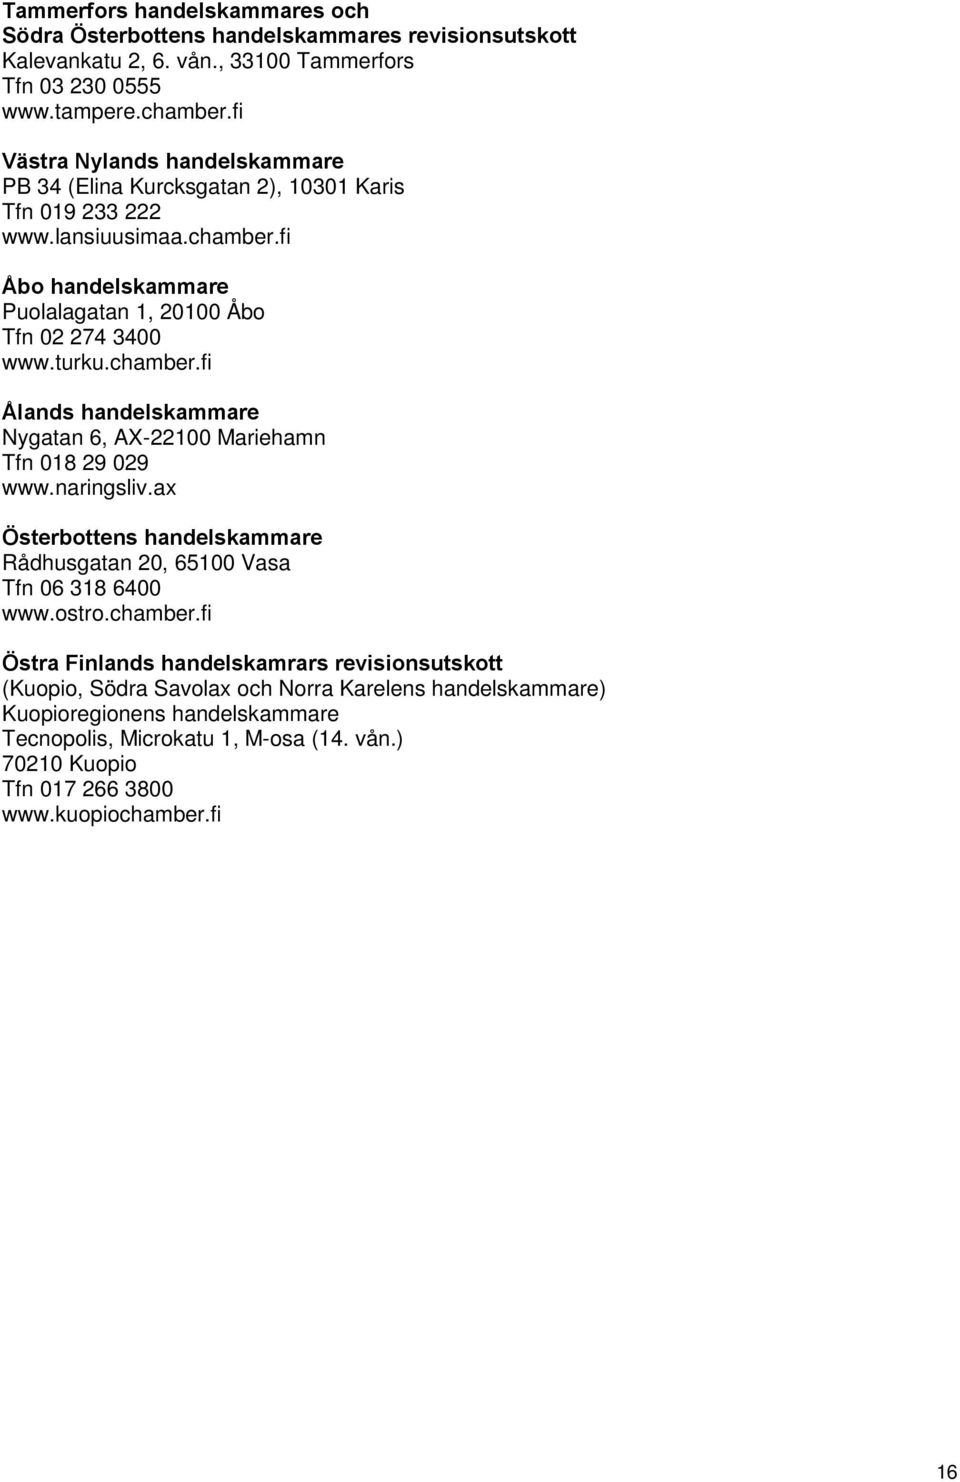 chamber.fi Ålands handelskammare Nygatan 6, AX-22100 Mariehamn Tfn 018 29 029 www.naringsliv.ax Österbottens handelskammare Rådhusgatan 20, 65100 Vasa Tfn 06 318 6400 www.ostro.chamber.fi Östra Finlands handelskamrars revisionsutskott (Kuopio, Södra Savolax och Norra Karelens handelskammare) Kuopioregionens handelskammare Tecnopolis, Microkatu 1, M-osa (14.